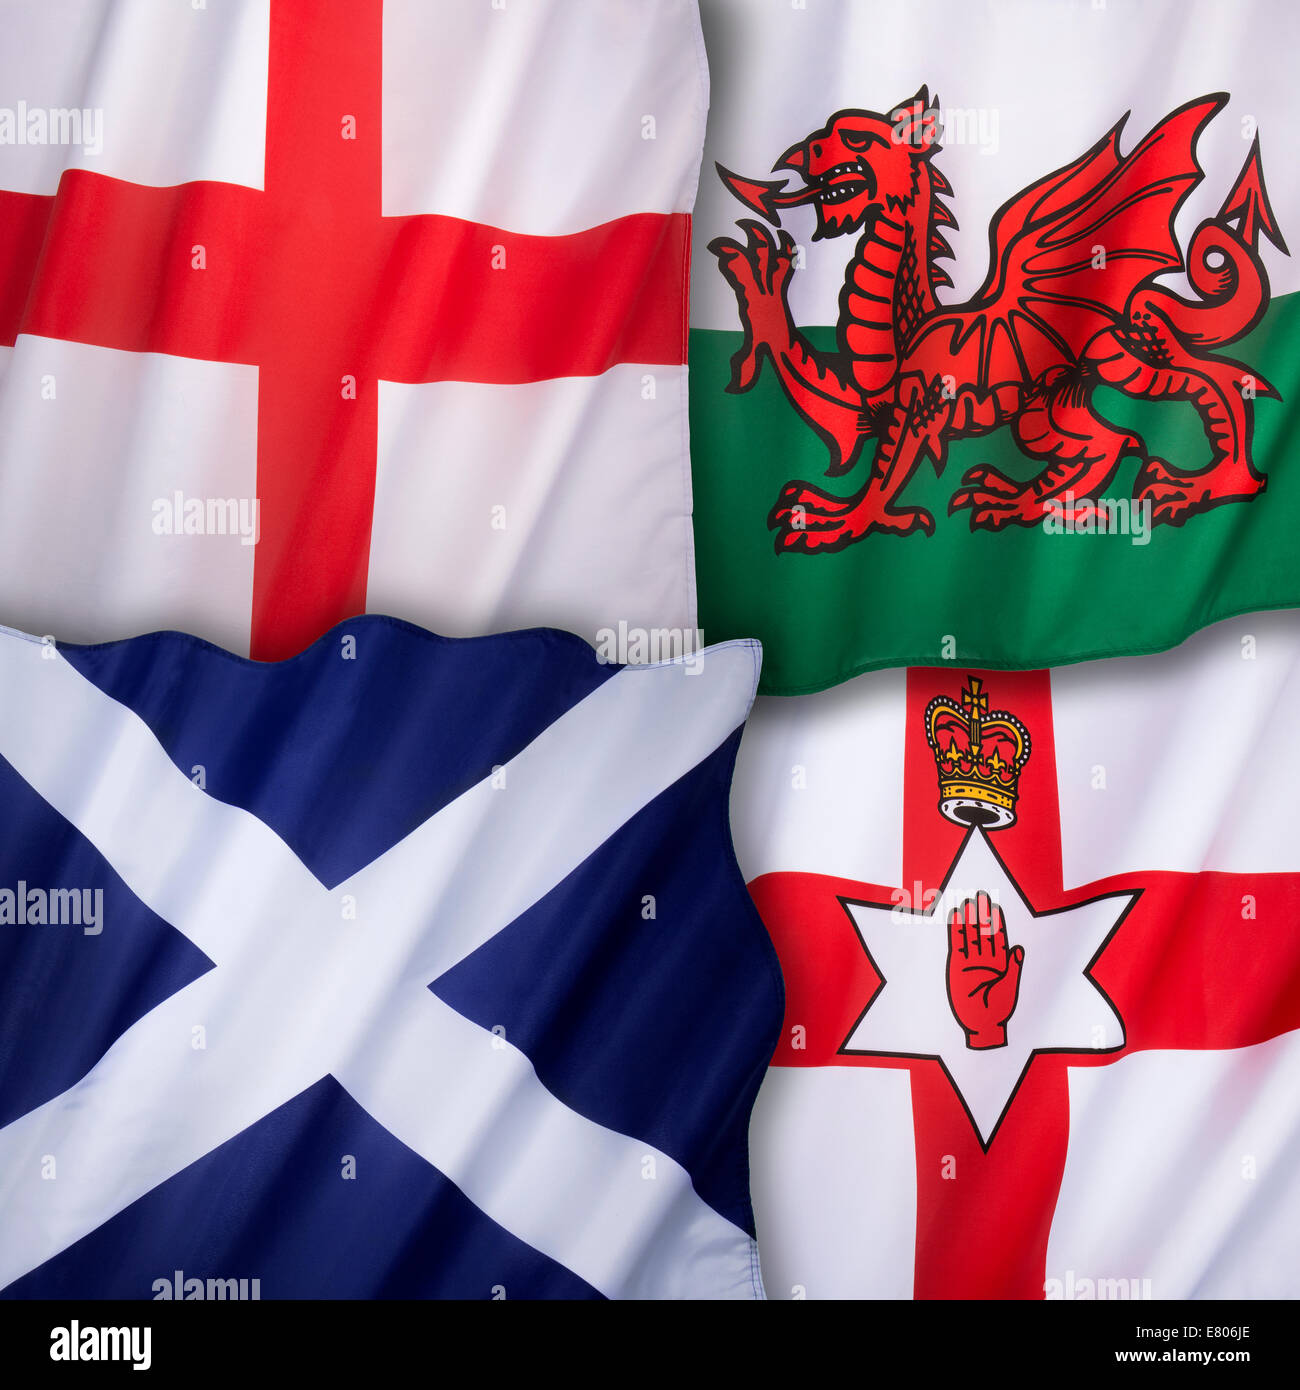 Drapeaux du Royaume-Uni de Grande-Bretagne - Angleterre, Ecosse, Pays de Galles, Irlande du Nord Banque D'Images